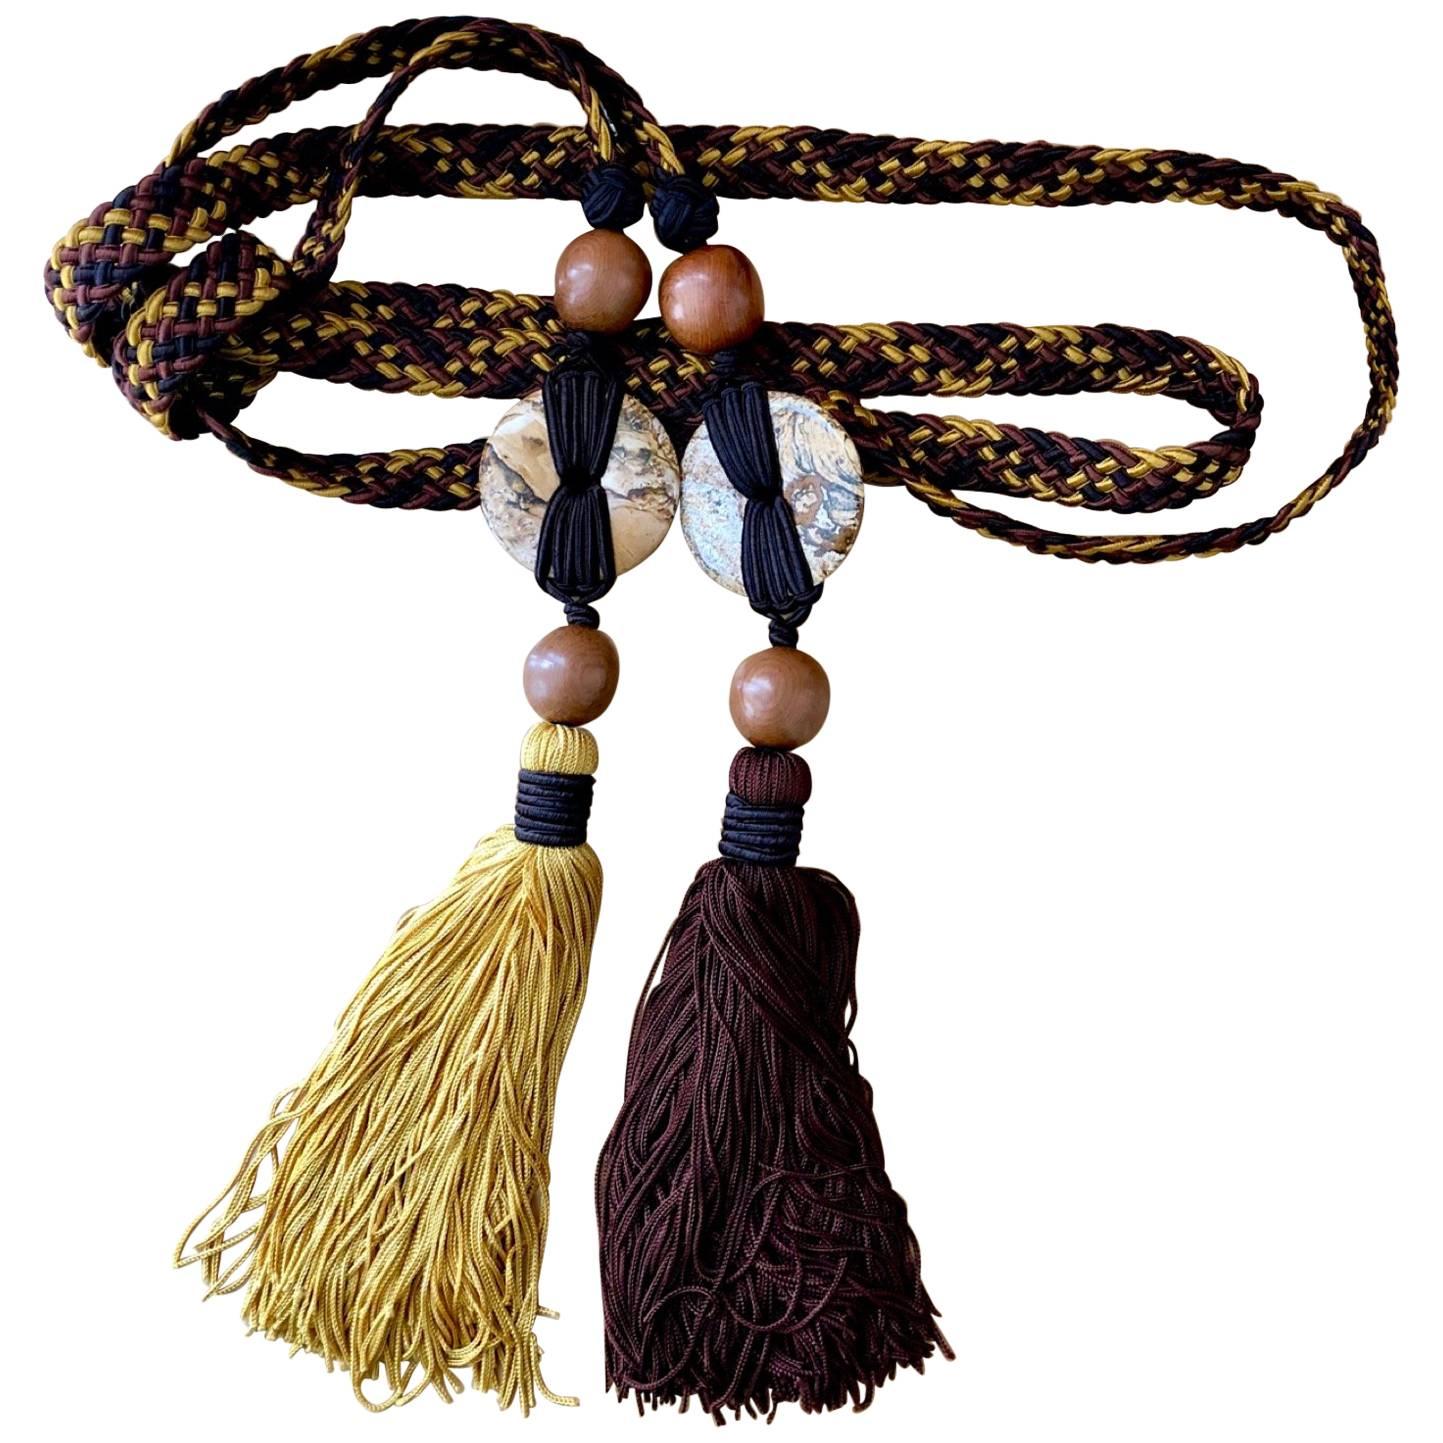 Afrikanische Perlen und traditionelle afrikanische Elemente finden sich in allen Entwürfen von Saint Laurent. Indem Saint Laurent sich von den verschiedenen handwerklichen Praktiken des Kontinents inspirieren ließ, konnte er die afrikanischen